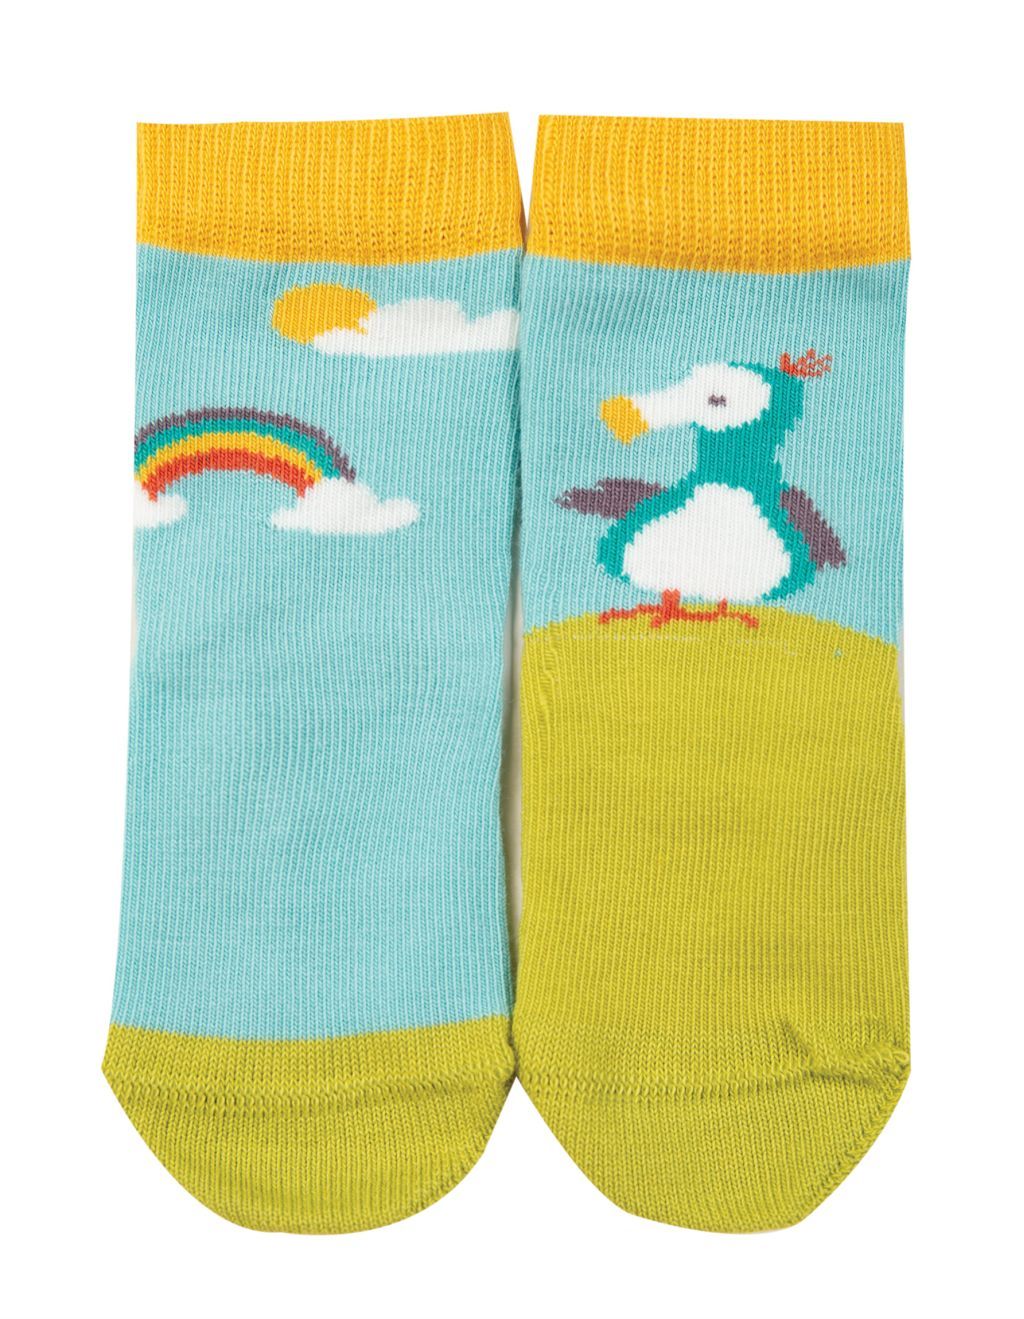 Little & Large Socks Dodo Multipack AW19 2 10-14 + M